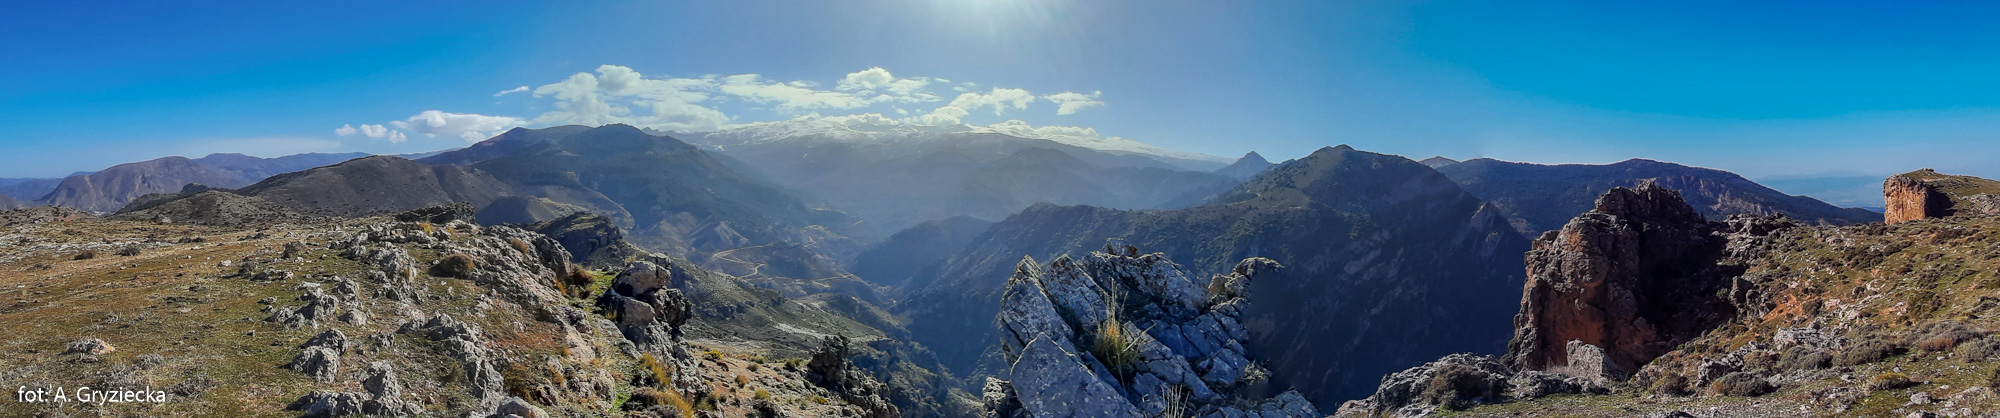 Panorama z Cerrajon (1653 m) na masyw Pico del Veleta (3394 m) i dolinę rzeki Rio Monachil